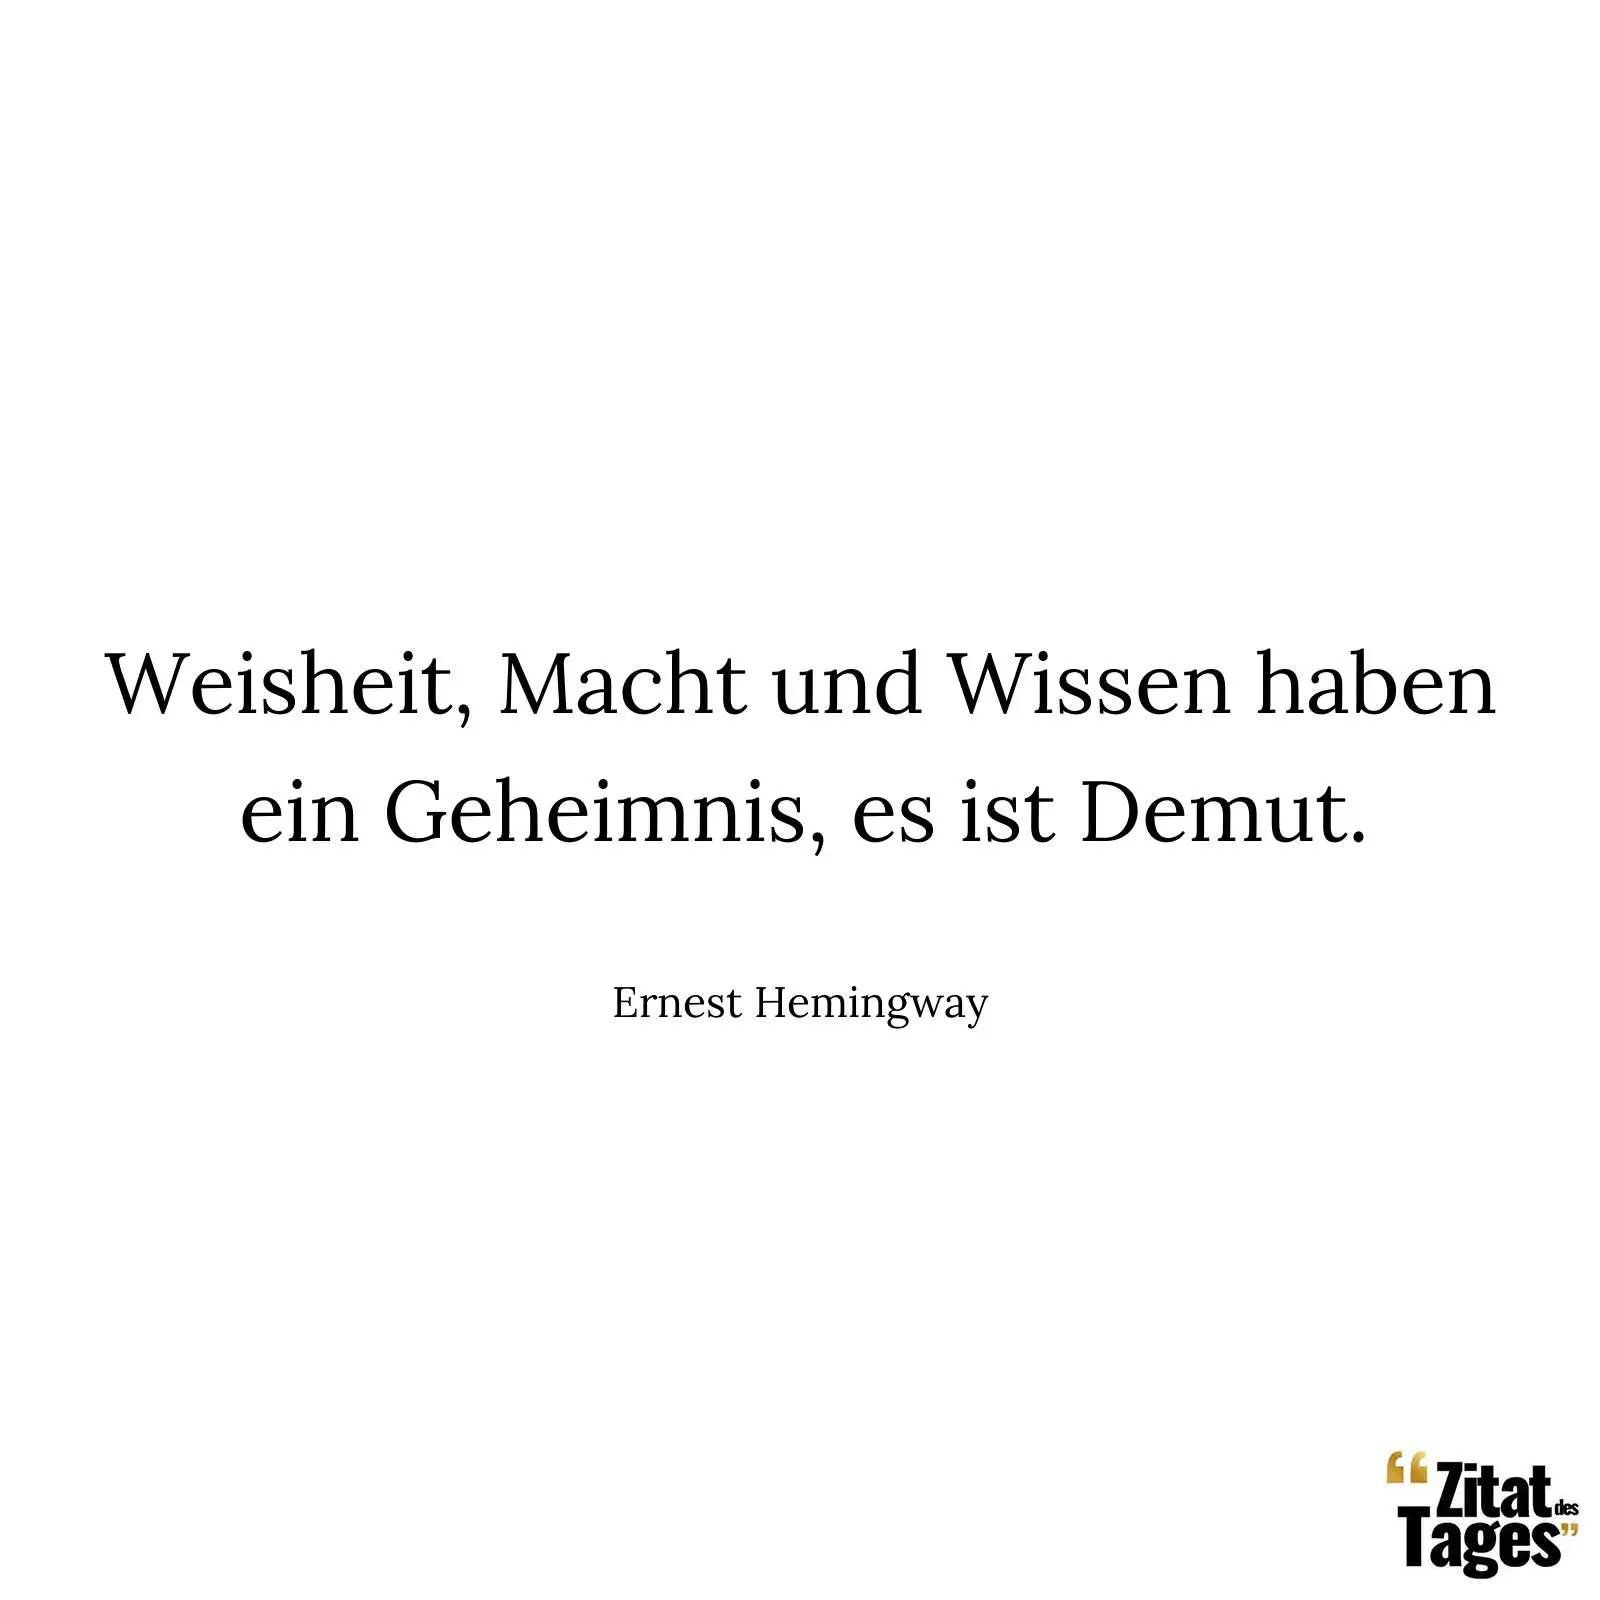 Weisheit, Macht und Wissen haben ein Geheimnis, es ist Demut. - Ernest Hemingway